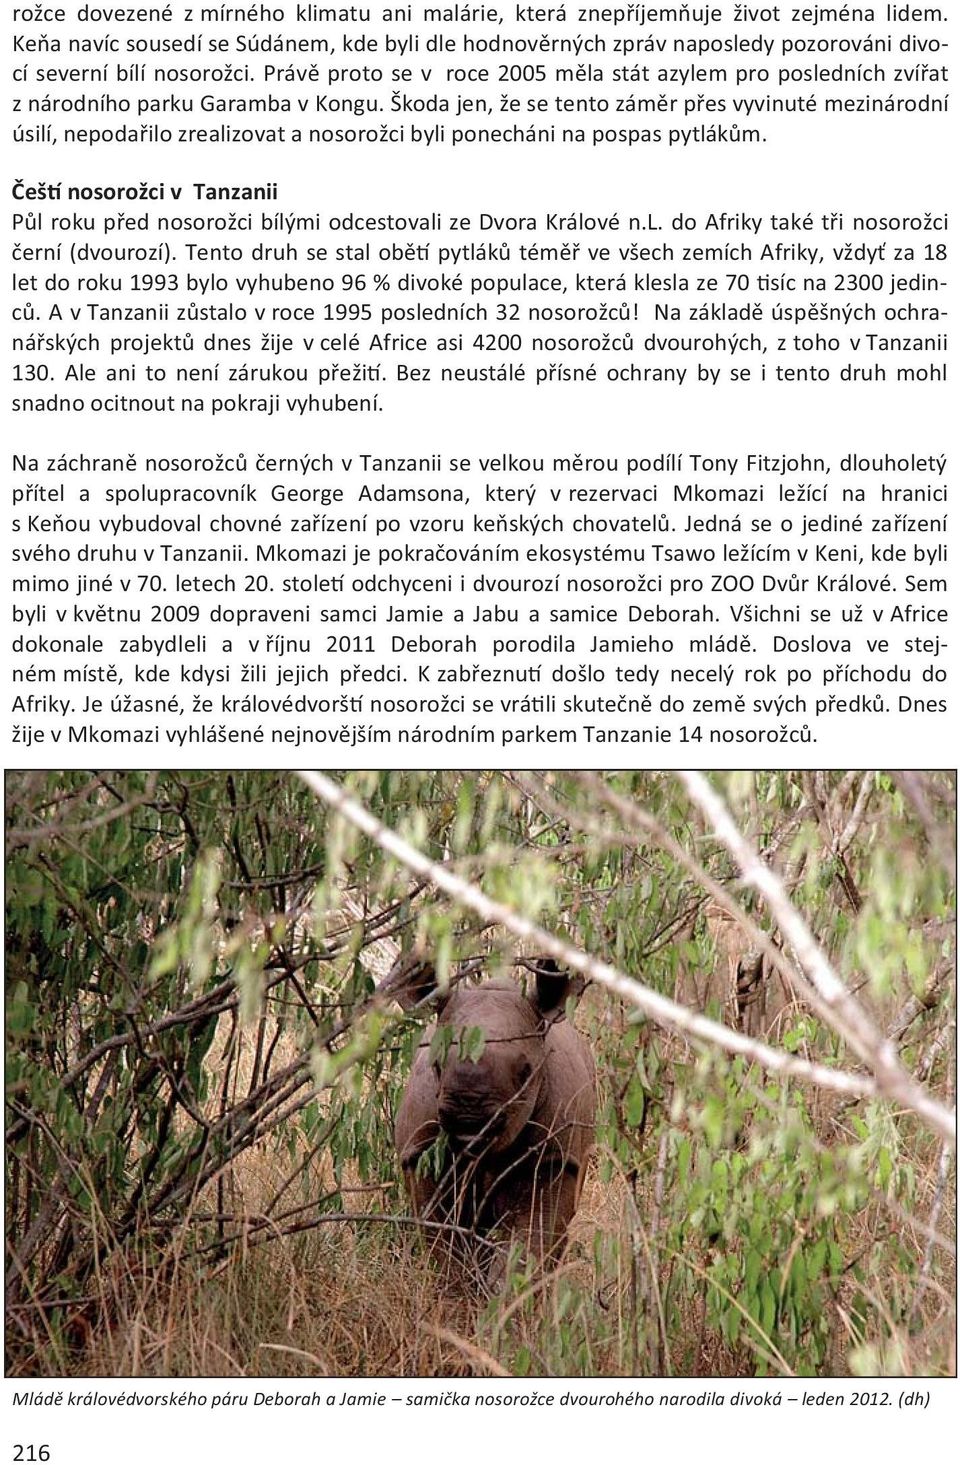 Právě proto se v roce 2005 měla stát azylem pro posledních zvířat z národního parku Garamba v Kongu.